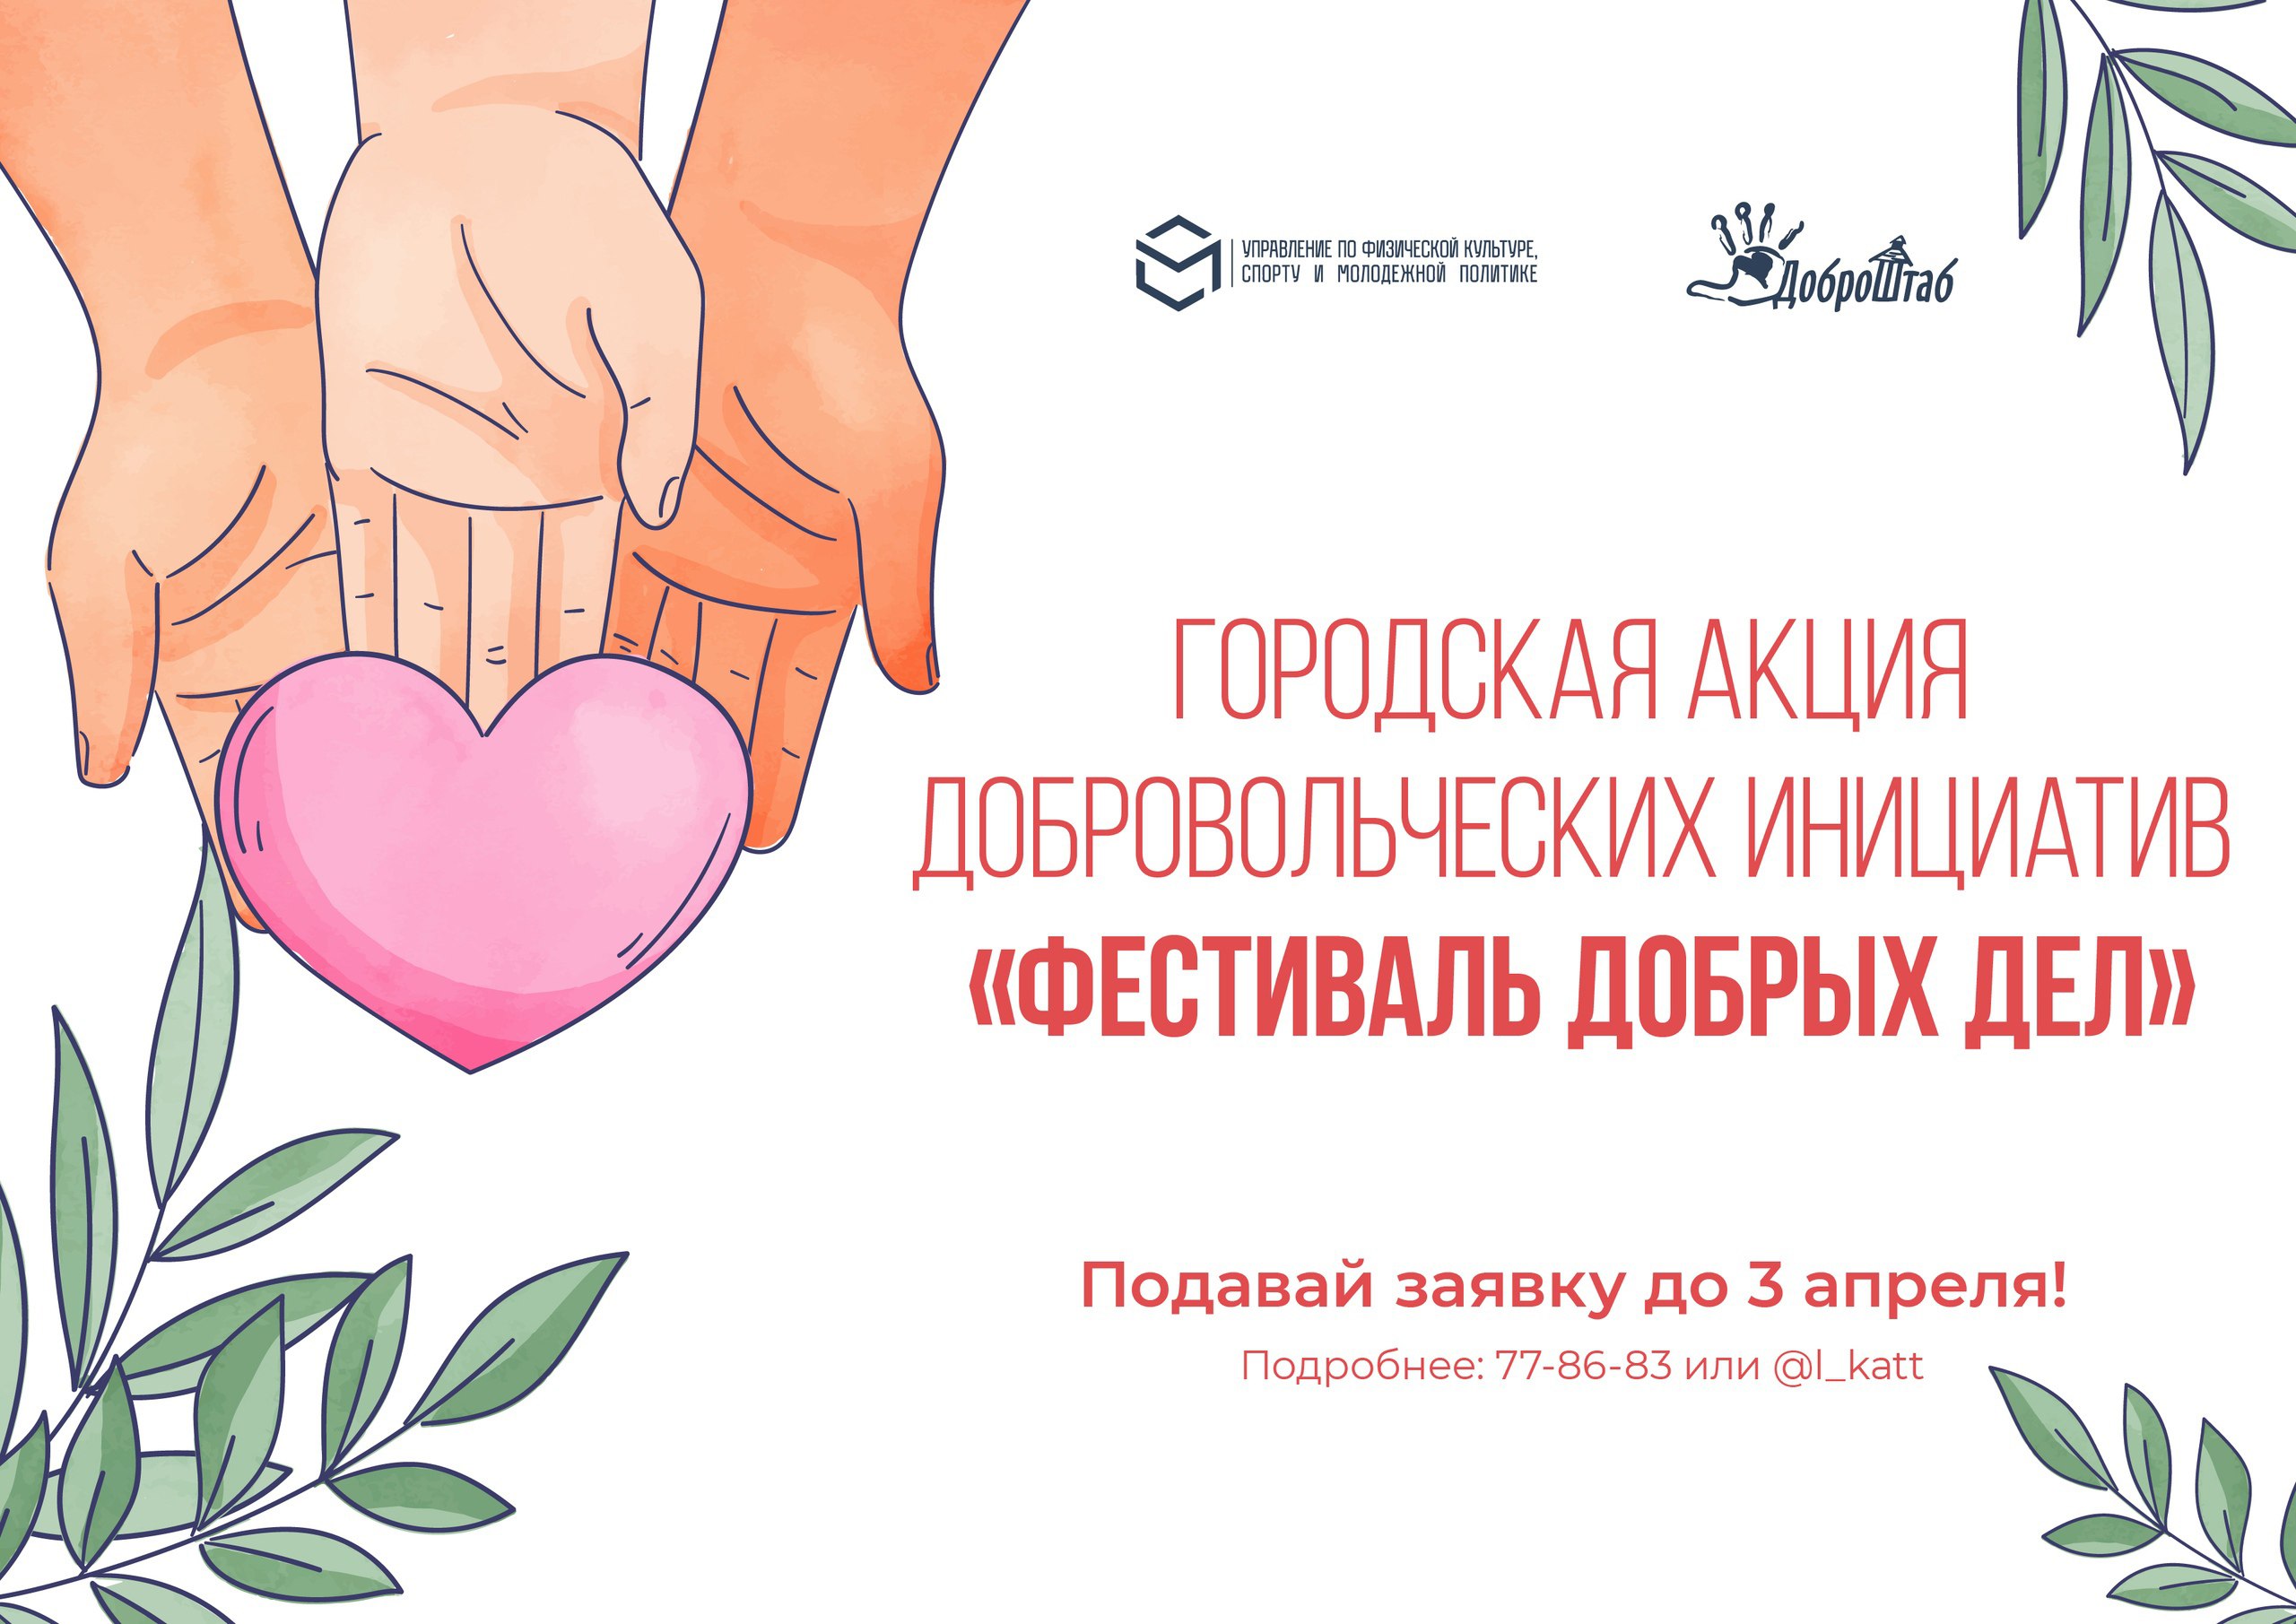 Владимирцев приглашают принять участие в фестивале добровольческих инициатив